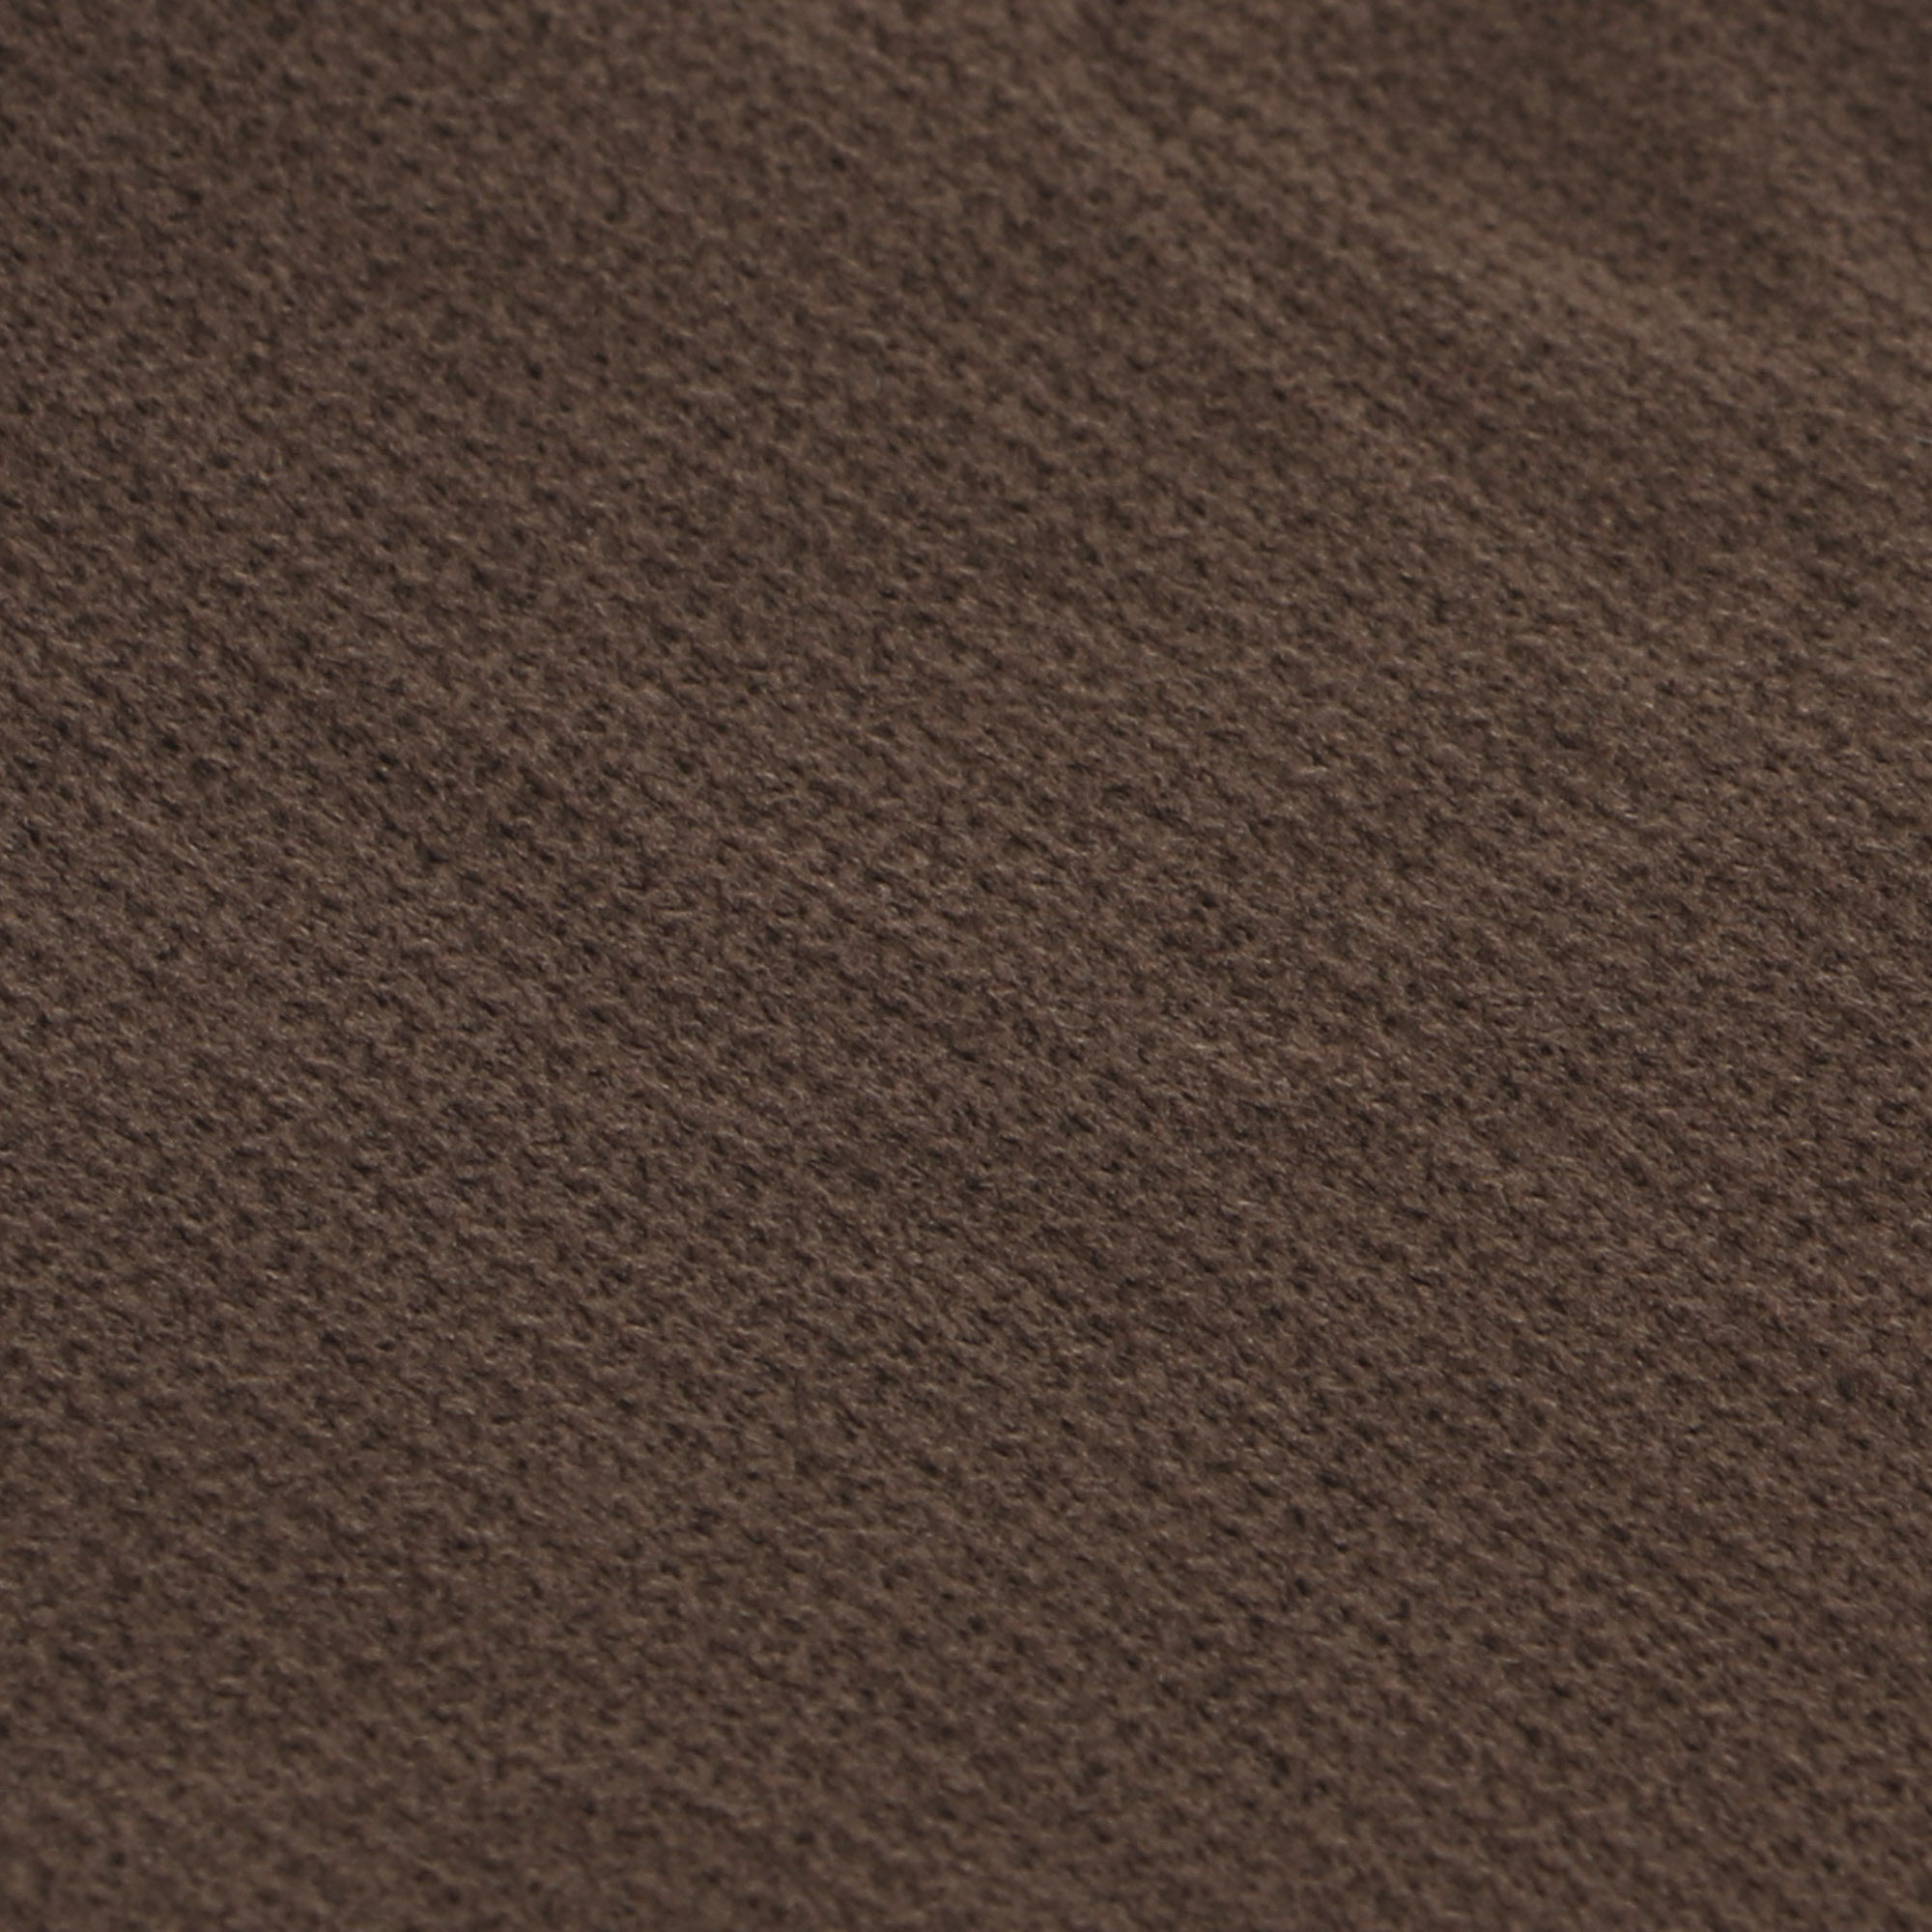 Колготки Sanpellegrino Support 20 Comfort Castoro XL, цвет тёмно-коричневый, размер 4 - фото 2